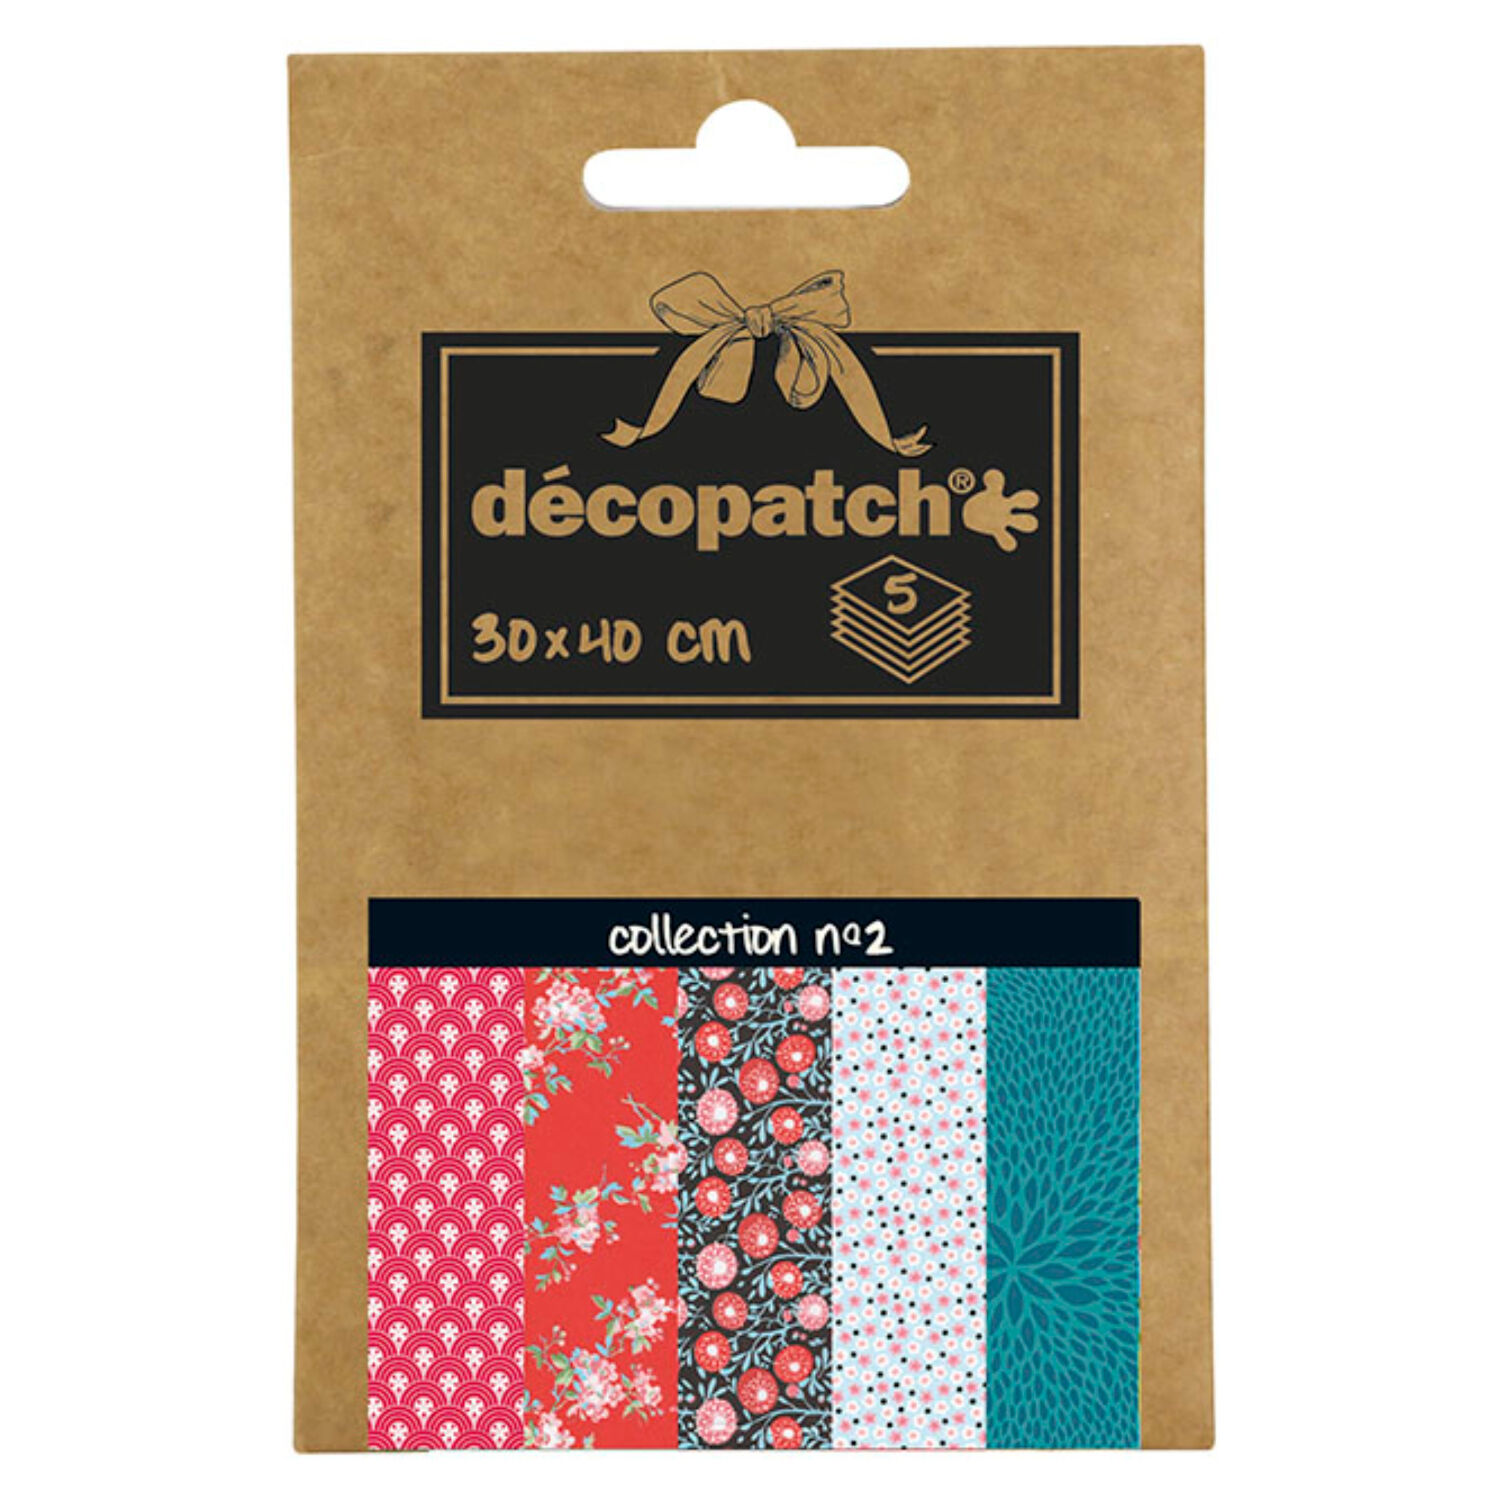 NEU Decoupage- / Decopatch-Papier Pocket-Sortierung, 5 Bogen 30 x 40 cm, Motive: 660, 658, 743, 661, 651